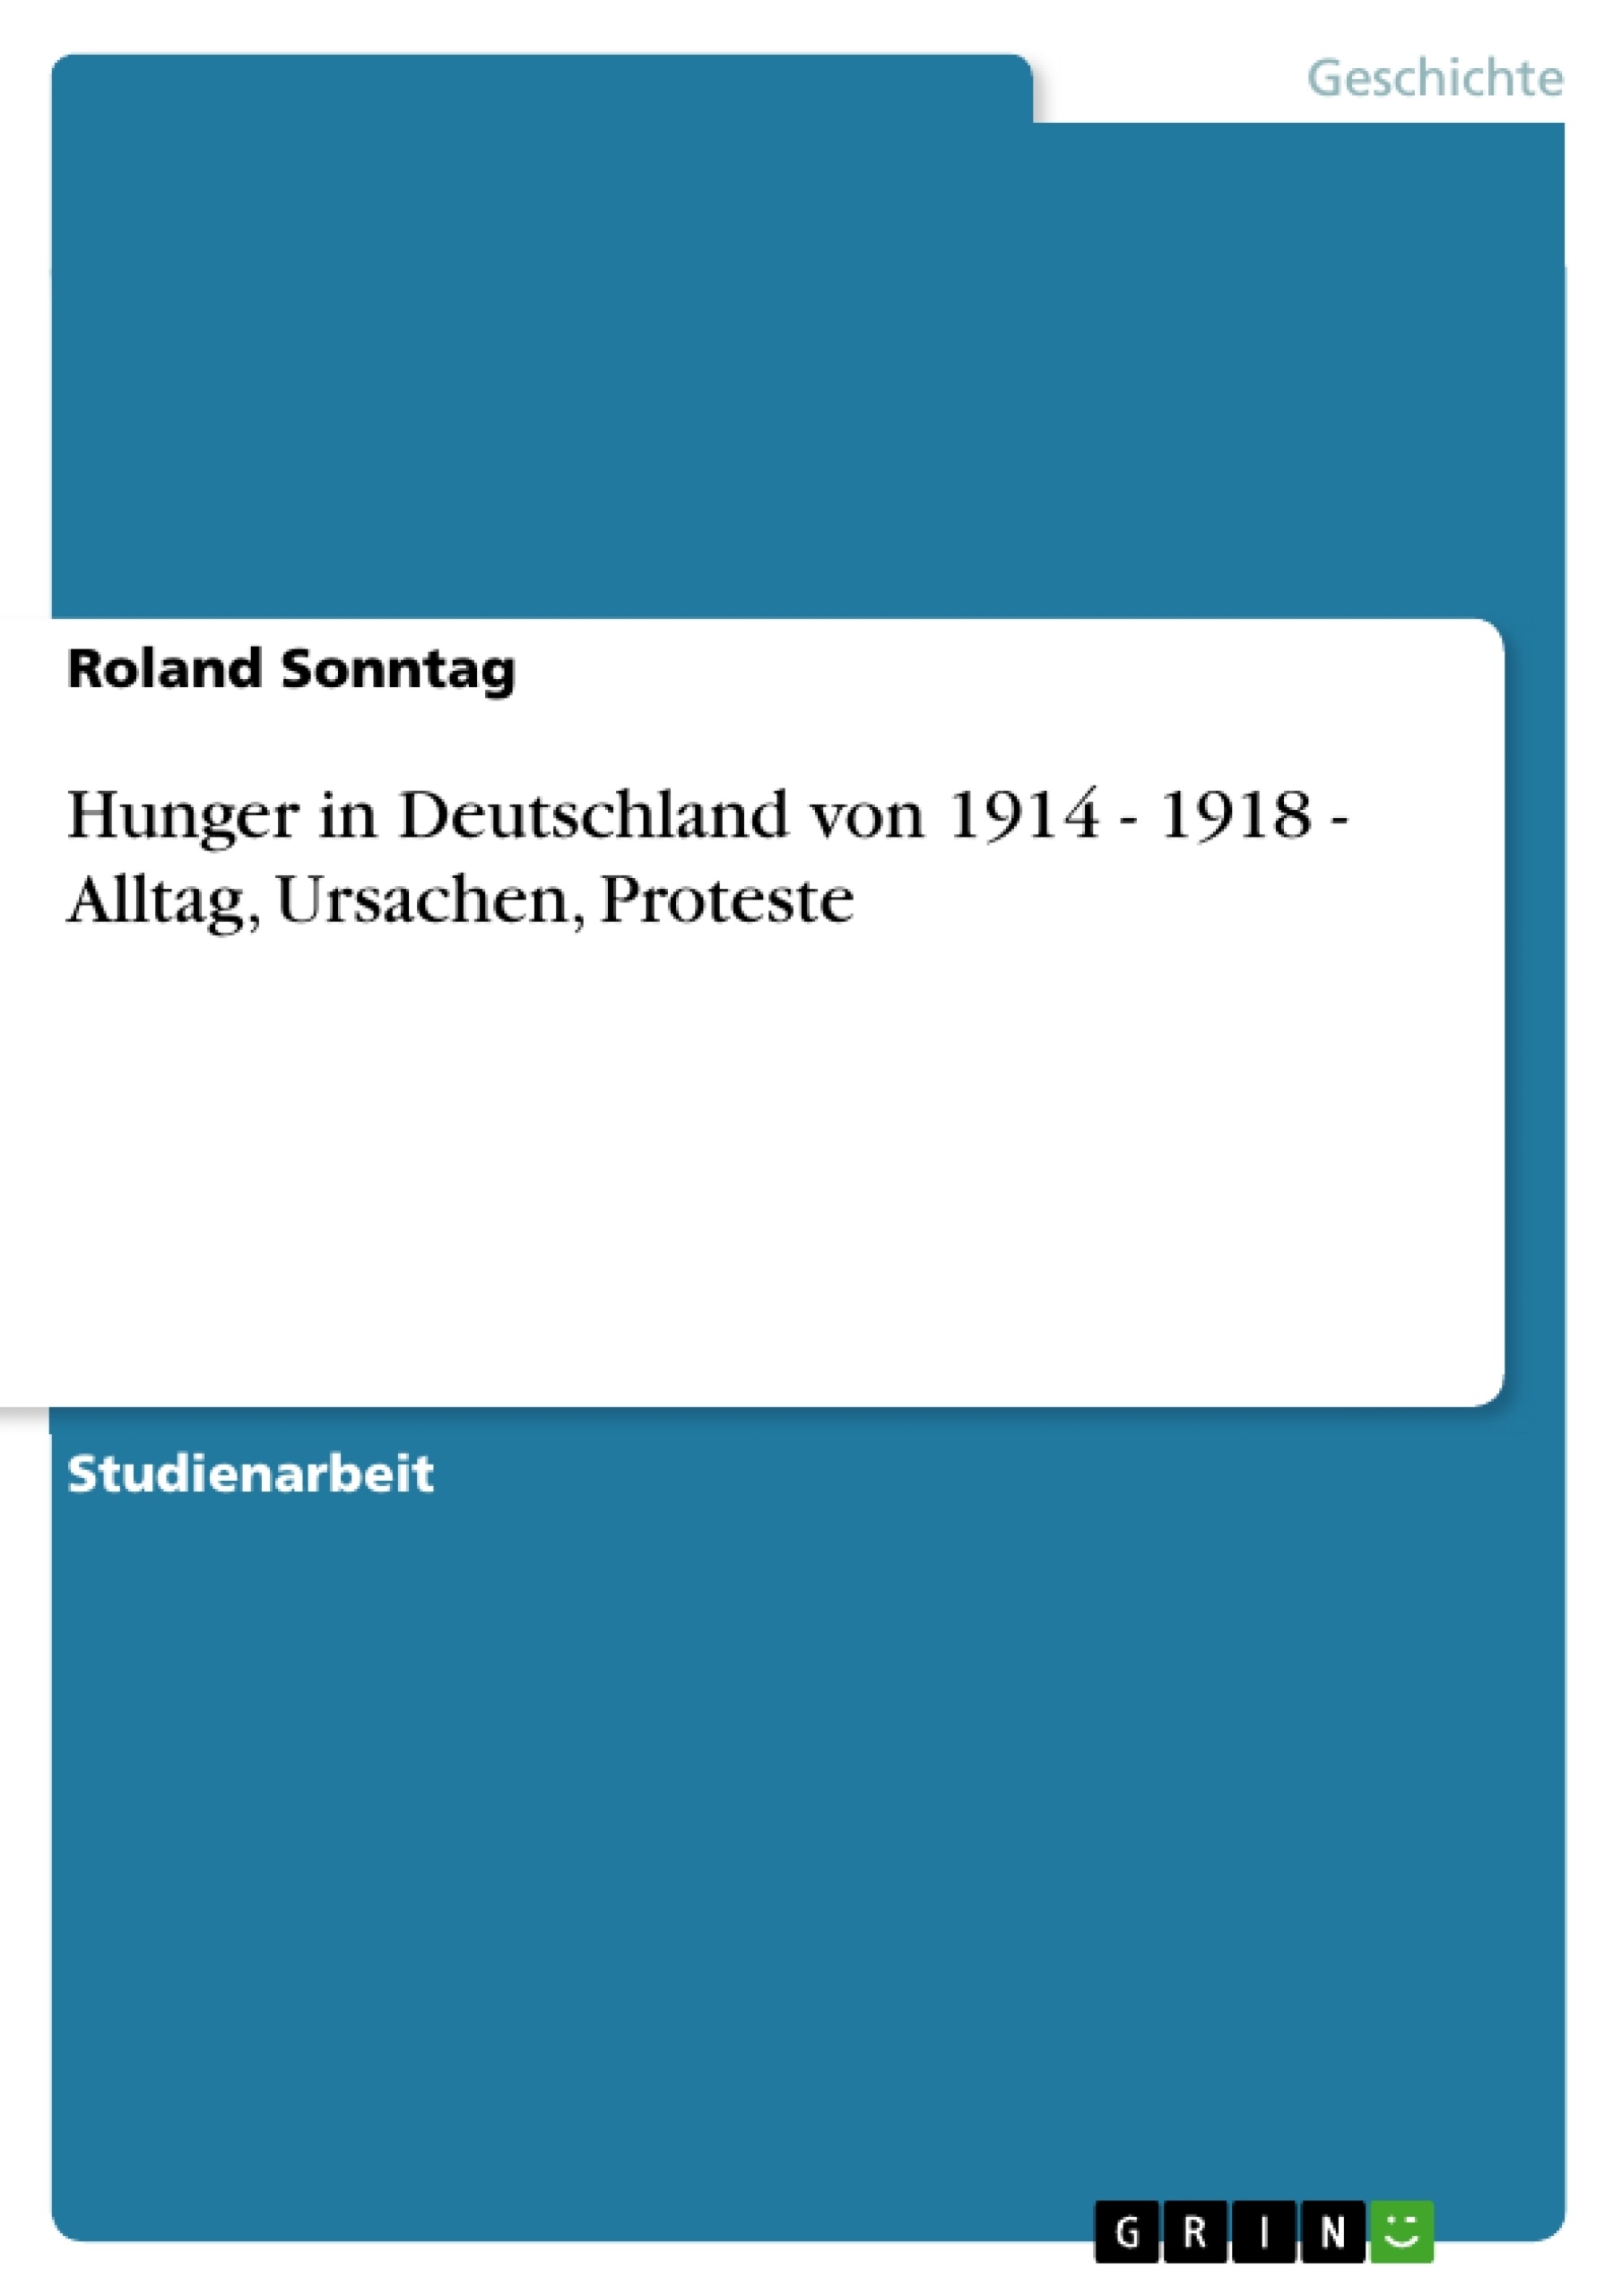 Título: Hunger in Deutschland von 1914 - 1918 - Alltag, Ursachen, Proteste